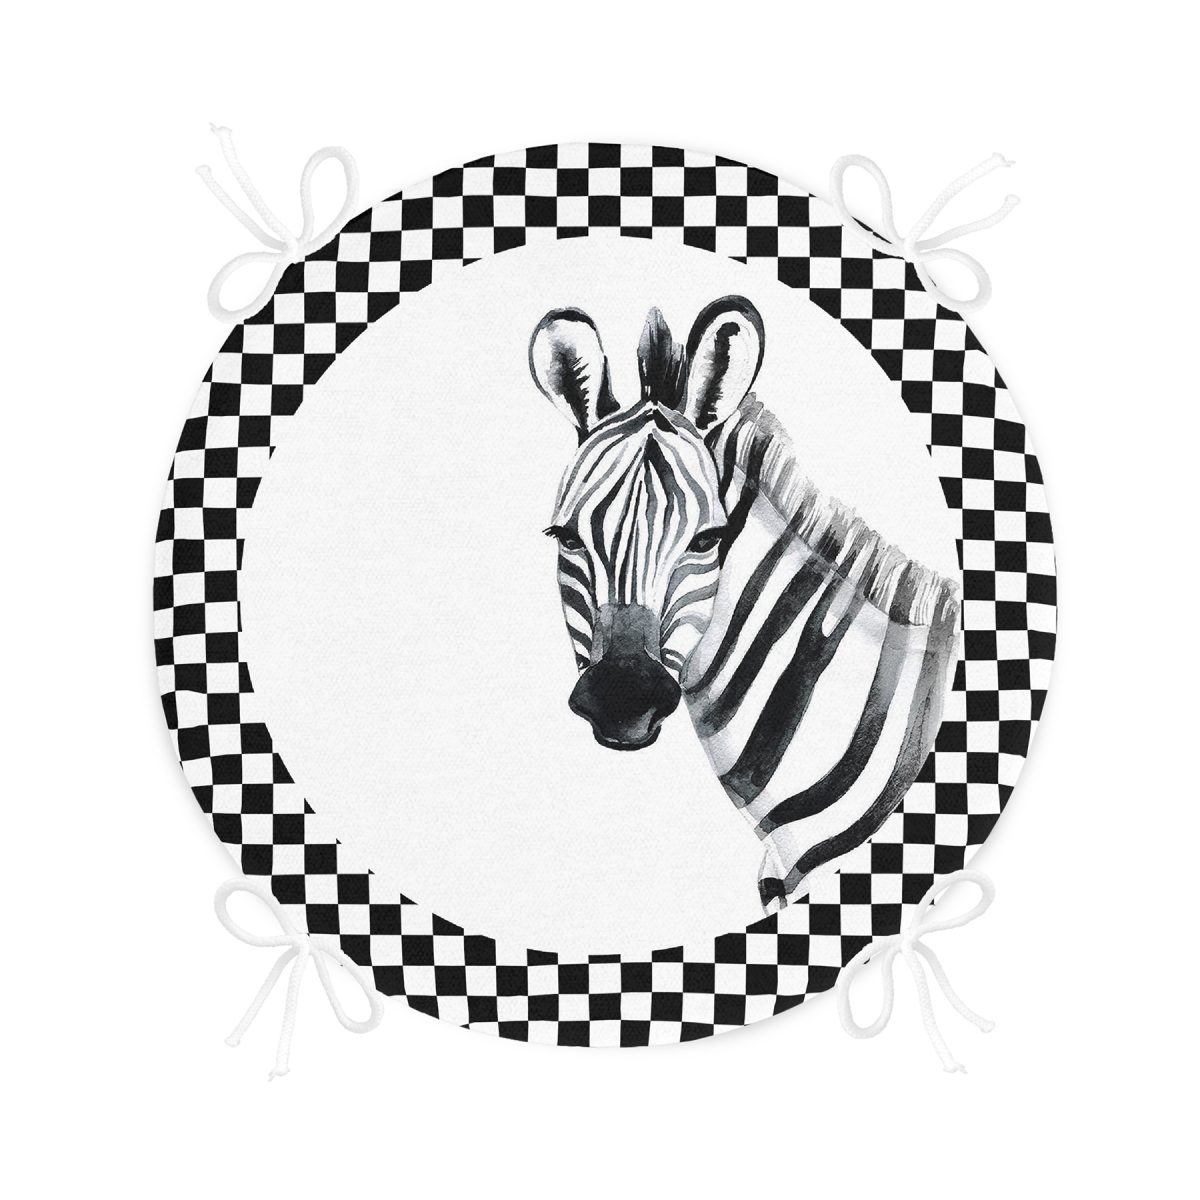 Damalı Çerçeve Motifli Zebra Desenli Yuvarlak Fermuarlı Sandalye Minderi Realhomes